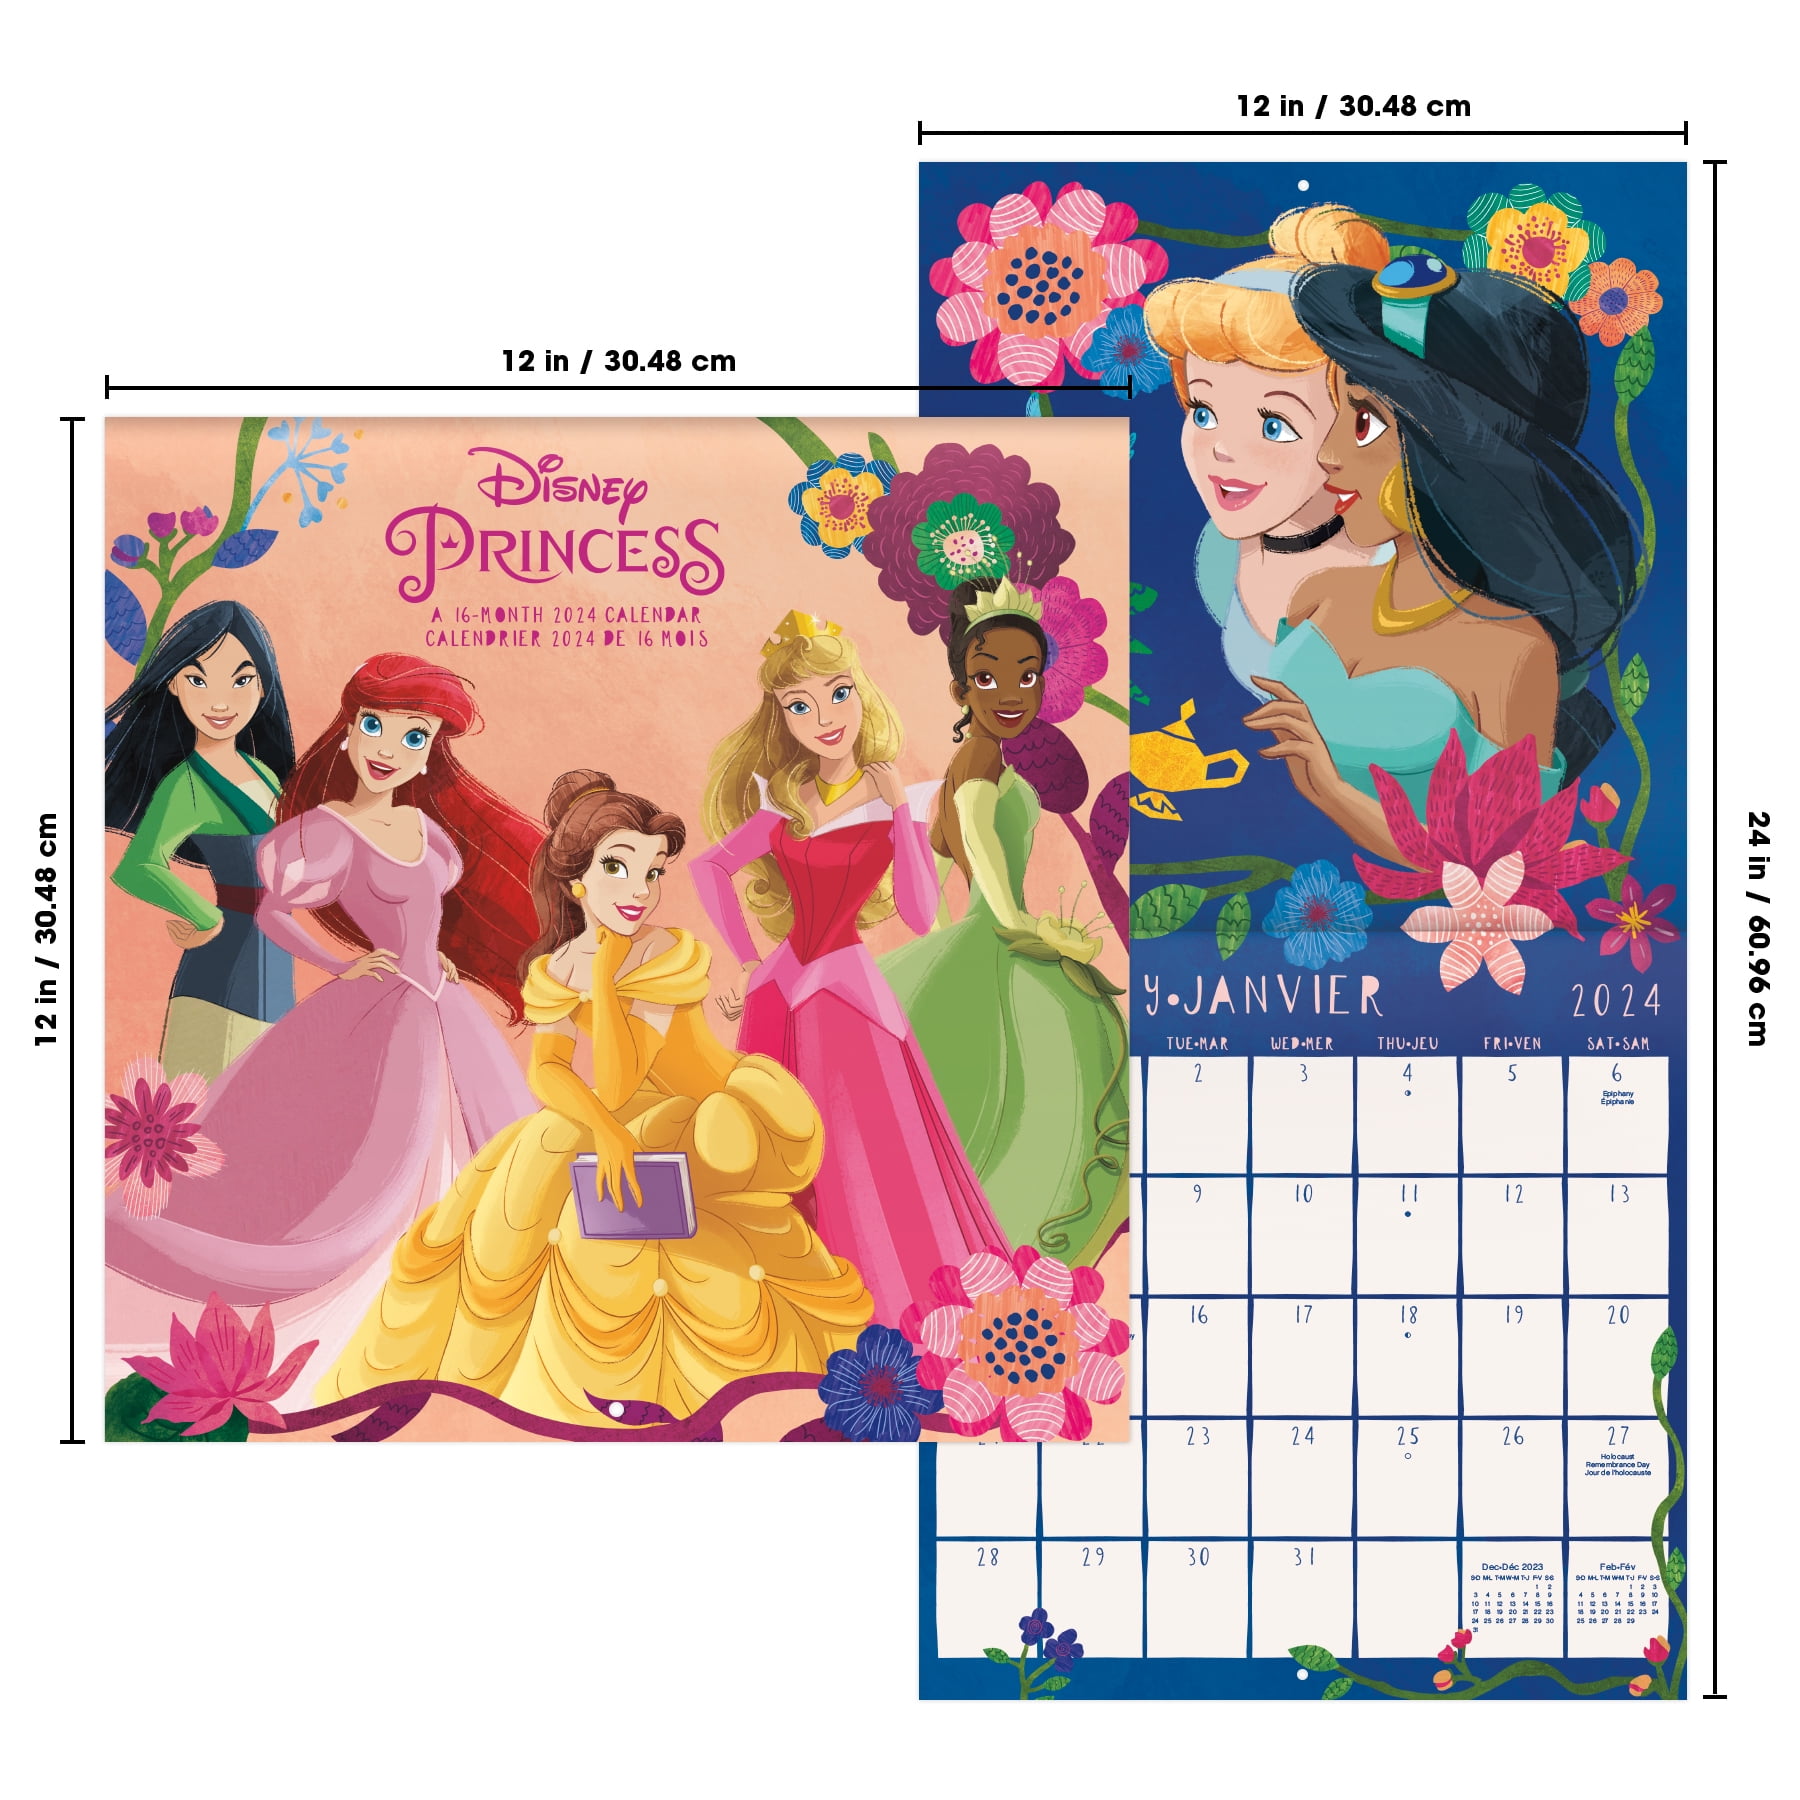 Trends International 2024 Disney Frozen Wall Calendar & Push Pins